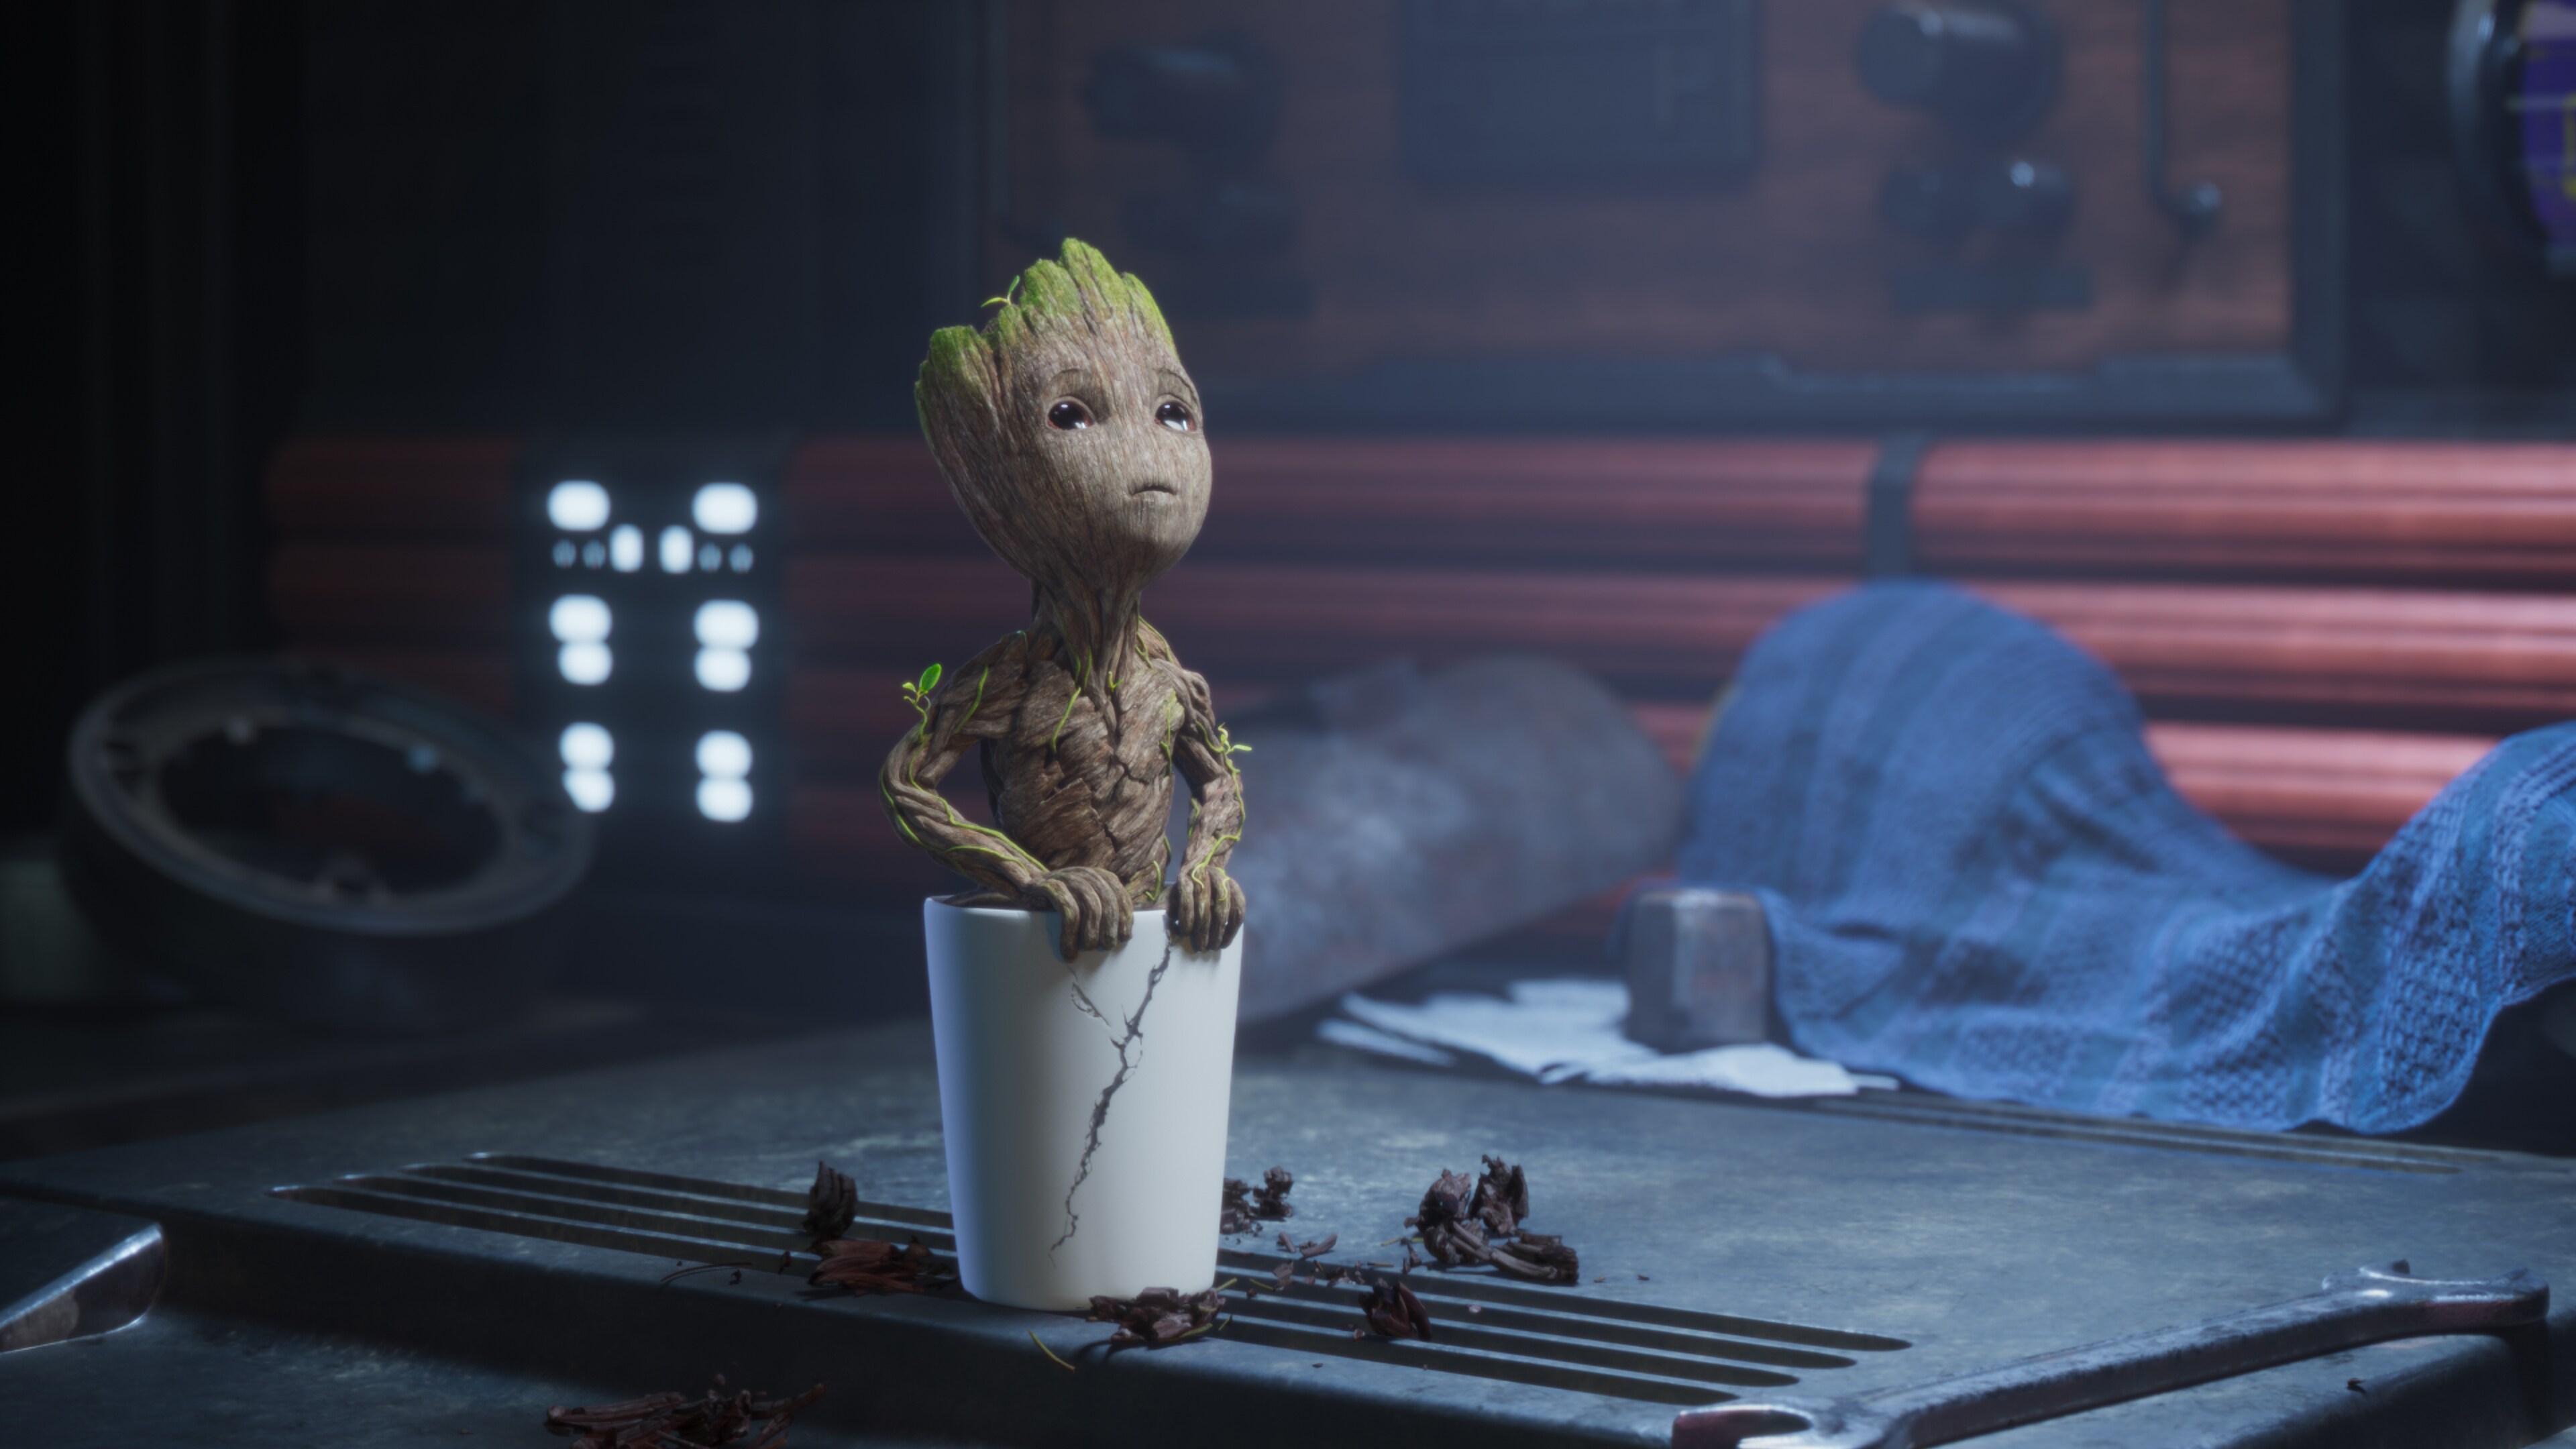 Groot bebé podría tener compañía: ¿Nos espera una serie de Rocket bebé o  quizás Vengadores bebé?